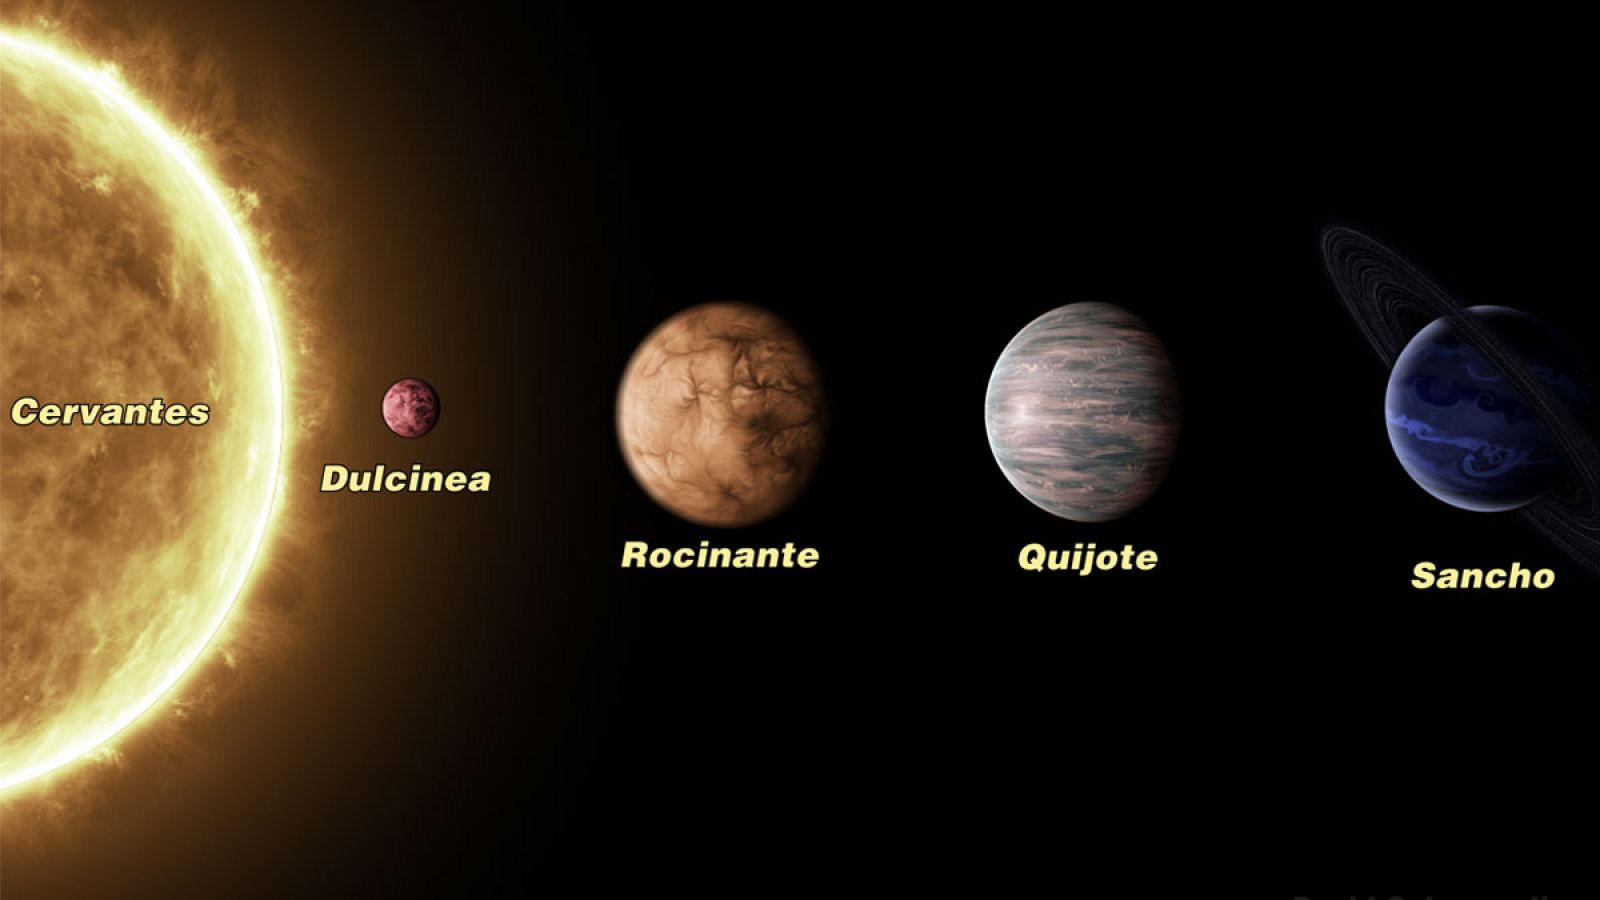 El sistema planetario µ (Mu) Arae: Cervantes y los cuatro planetas Quijote, Rocinante, Sancho y Dulcinea.